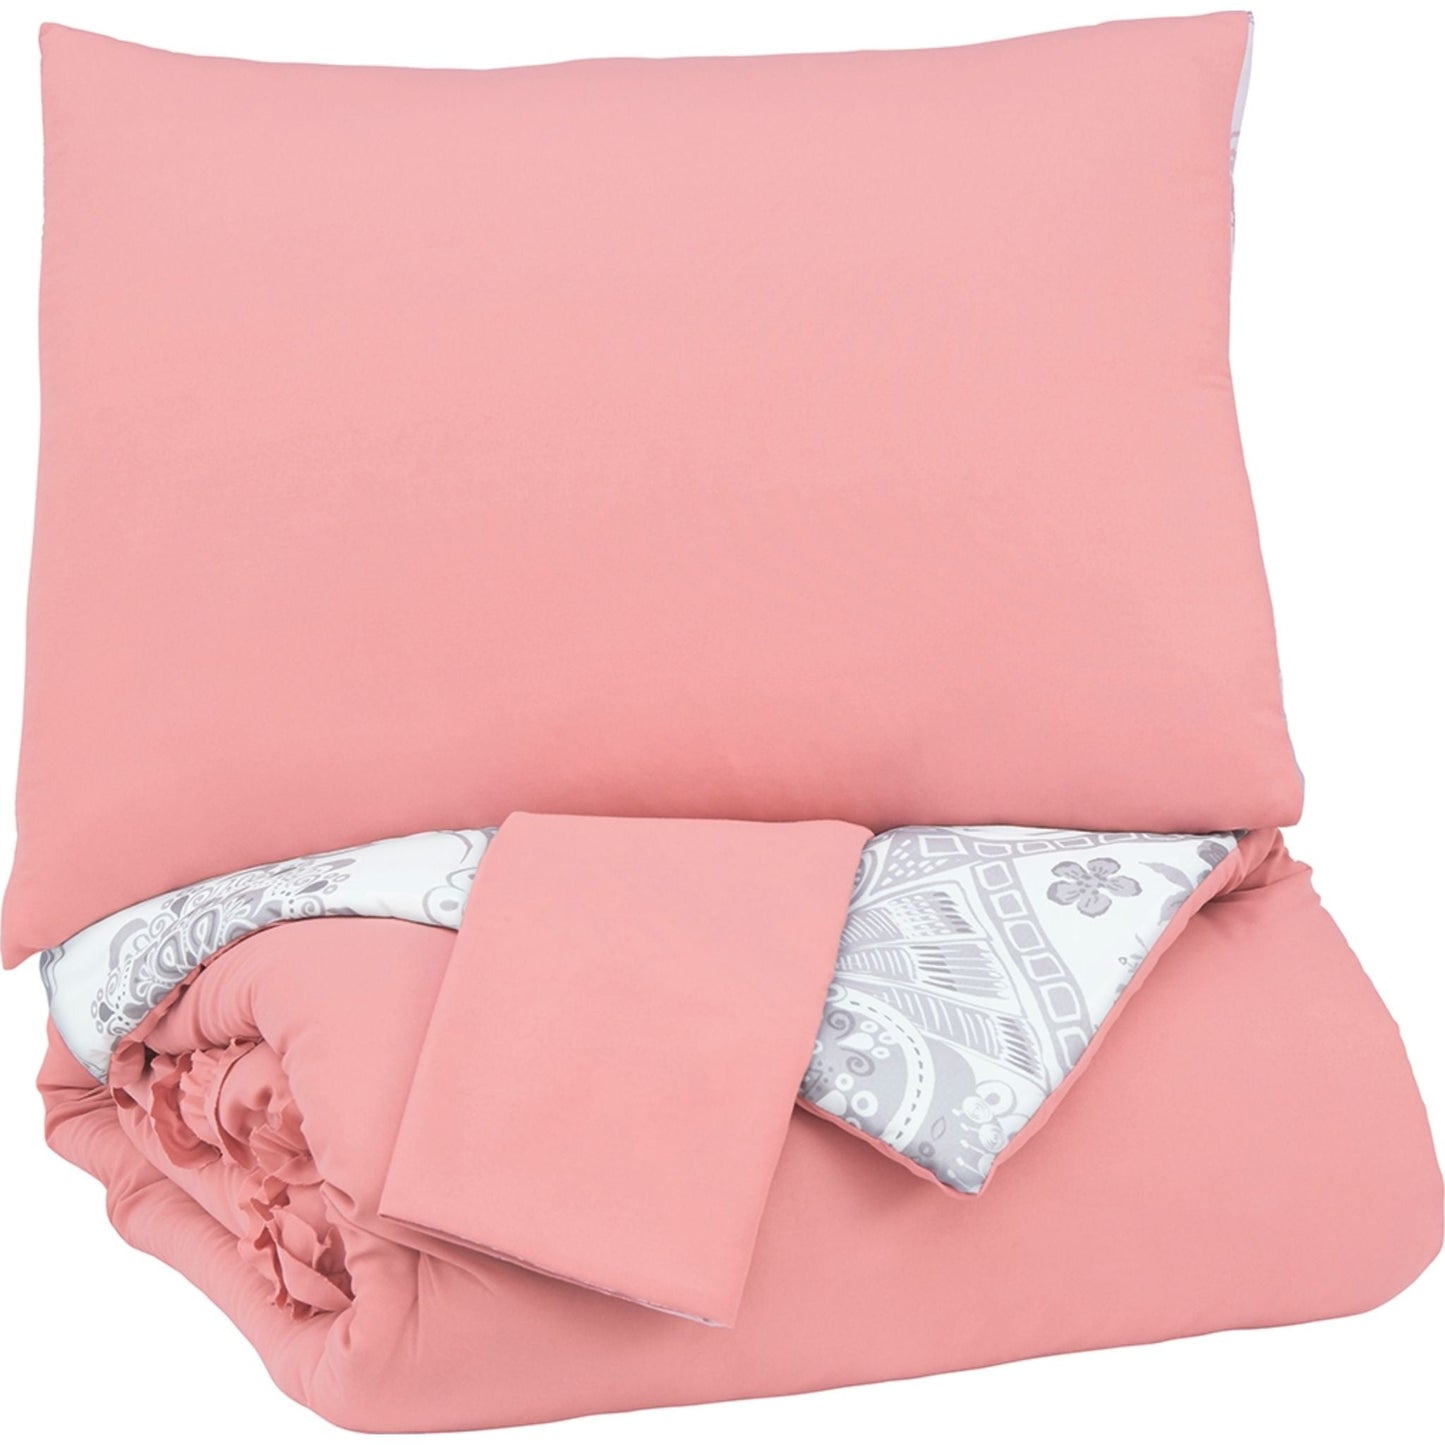 Avaleigh Full Comforter Set - Full